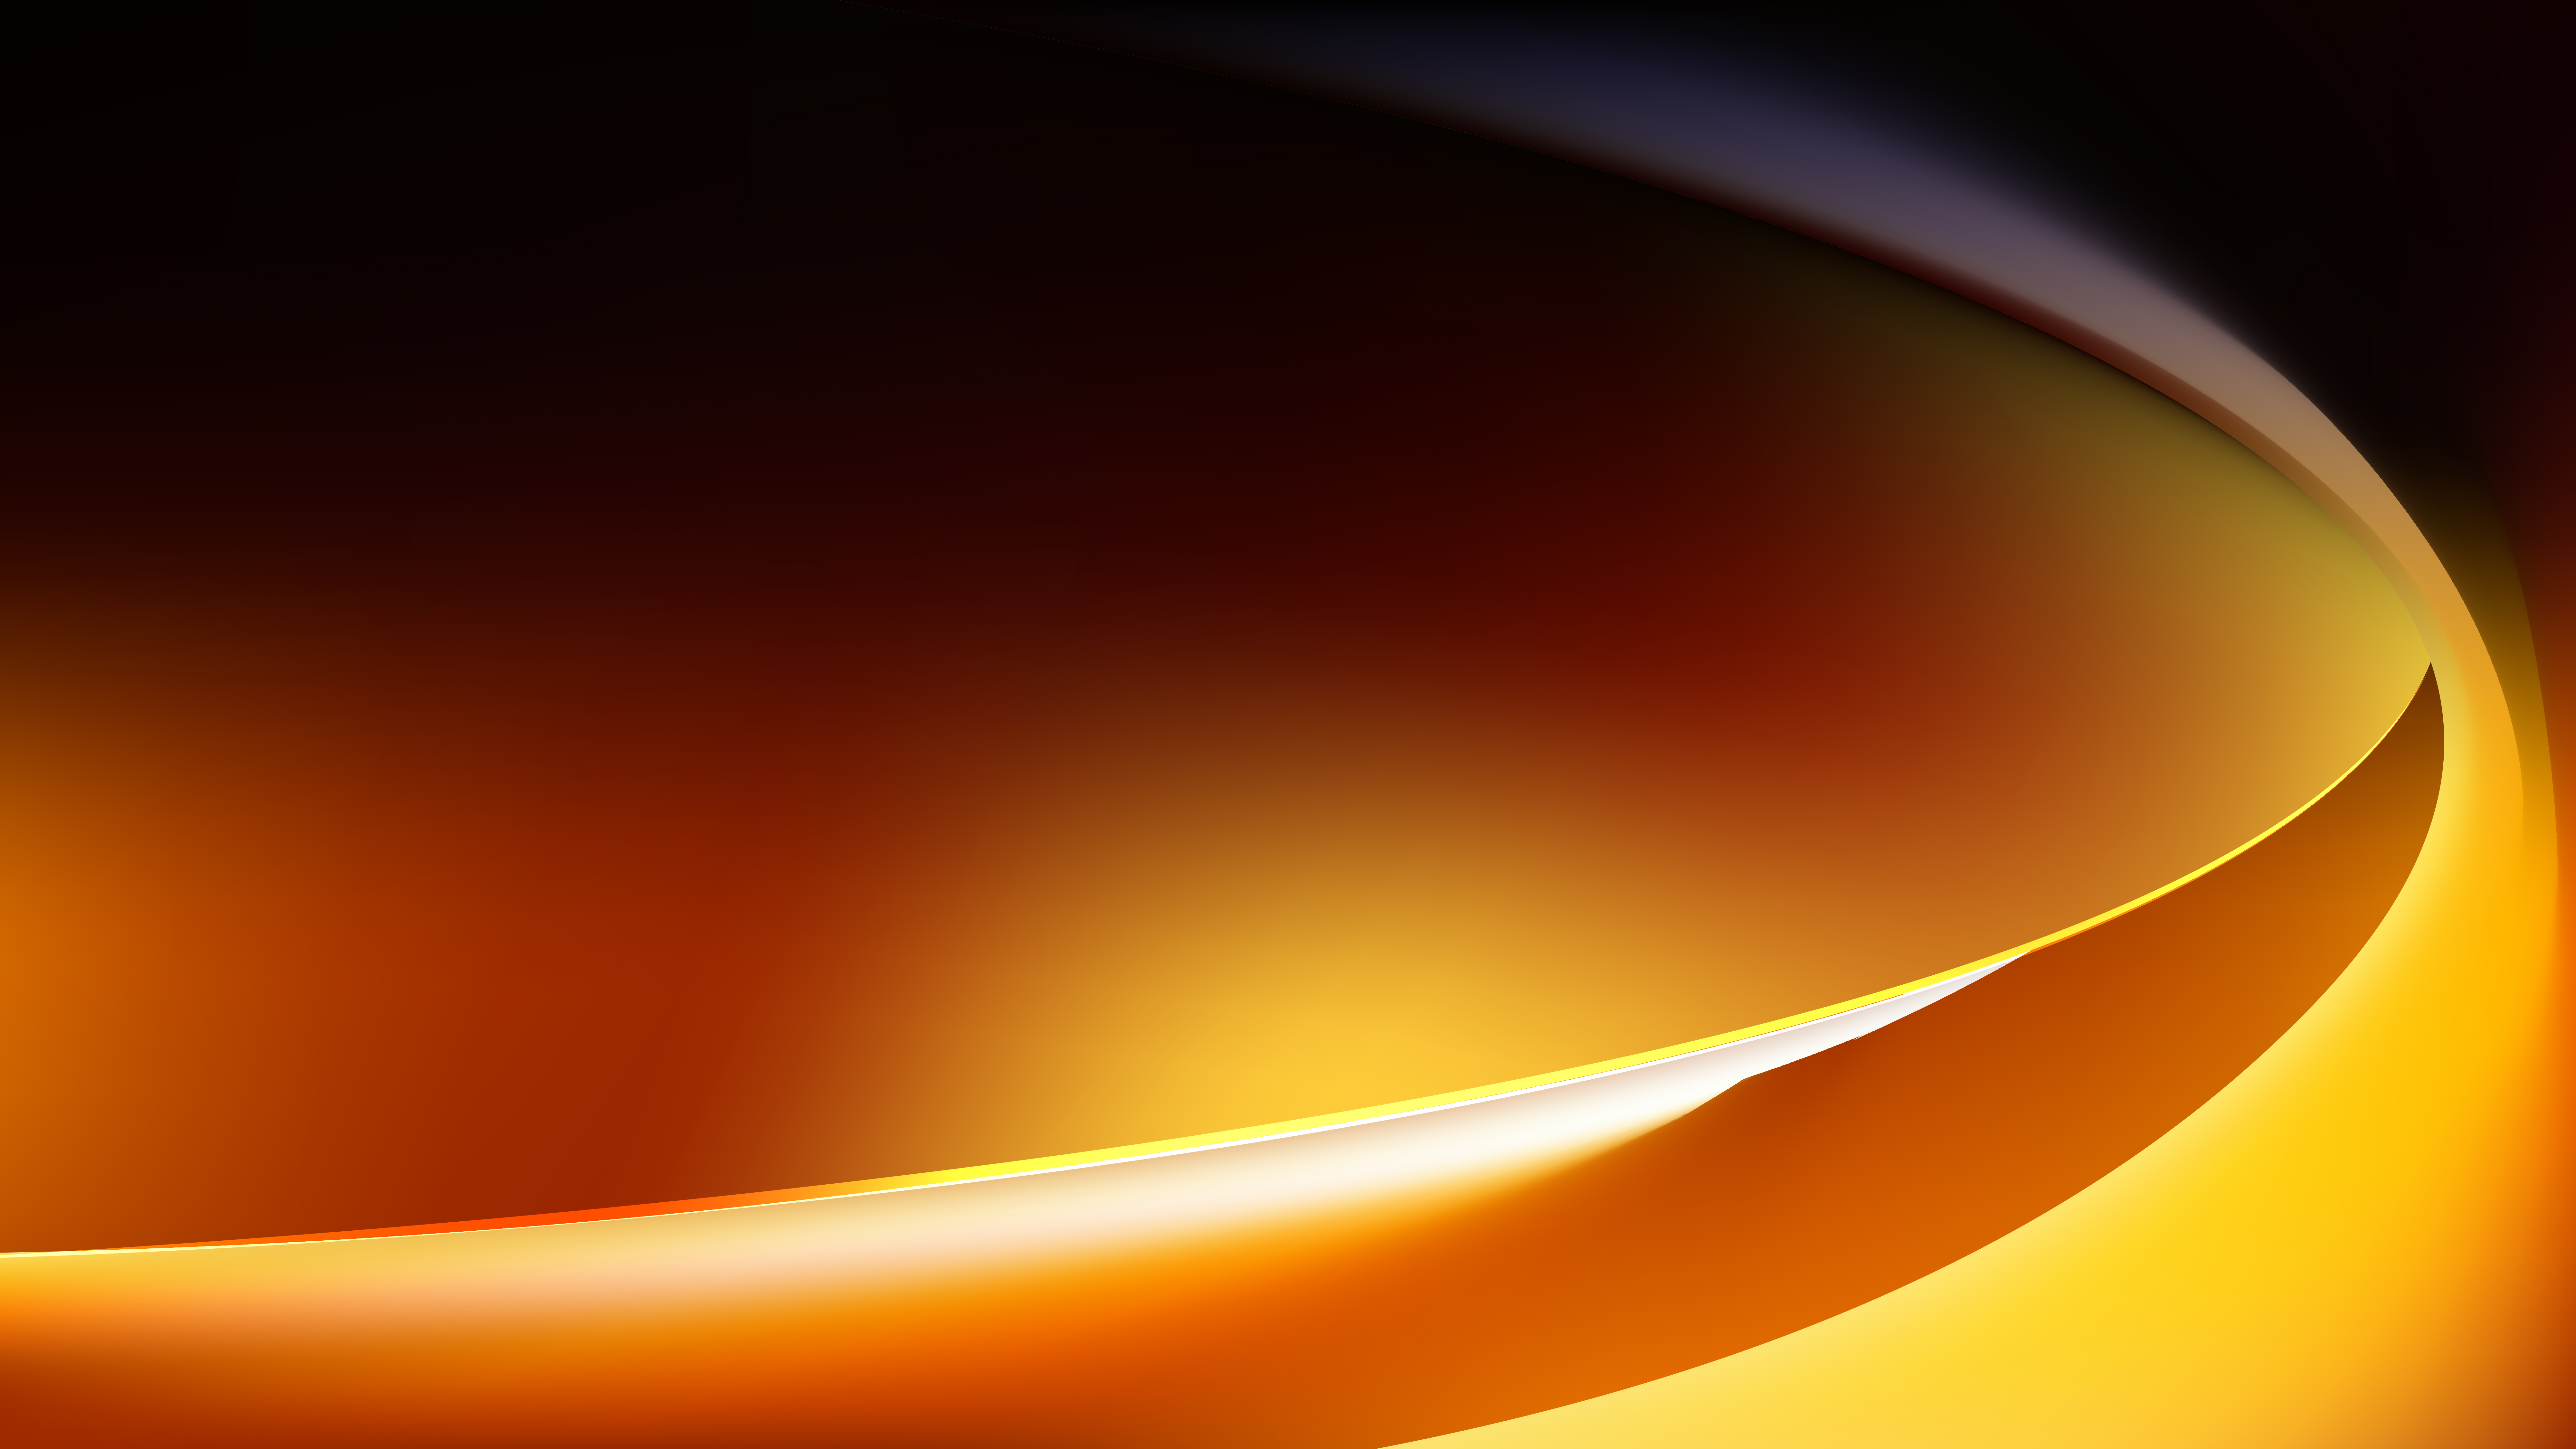 Hãy mở xem hình nền vector sóng đen cam sáng rực này và chiêm ngưỡng việc kết hợp màu sắc độc đáo của chúng. Sơn lấp lánh trên hình nền giúp bạn gây ấn tượng với mọi người.